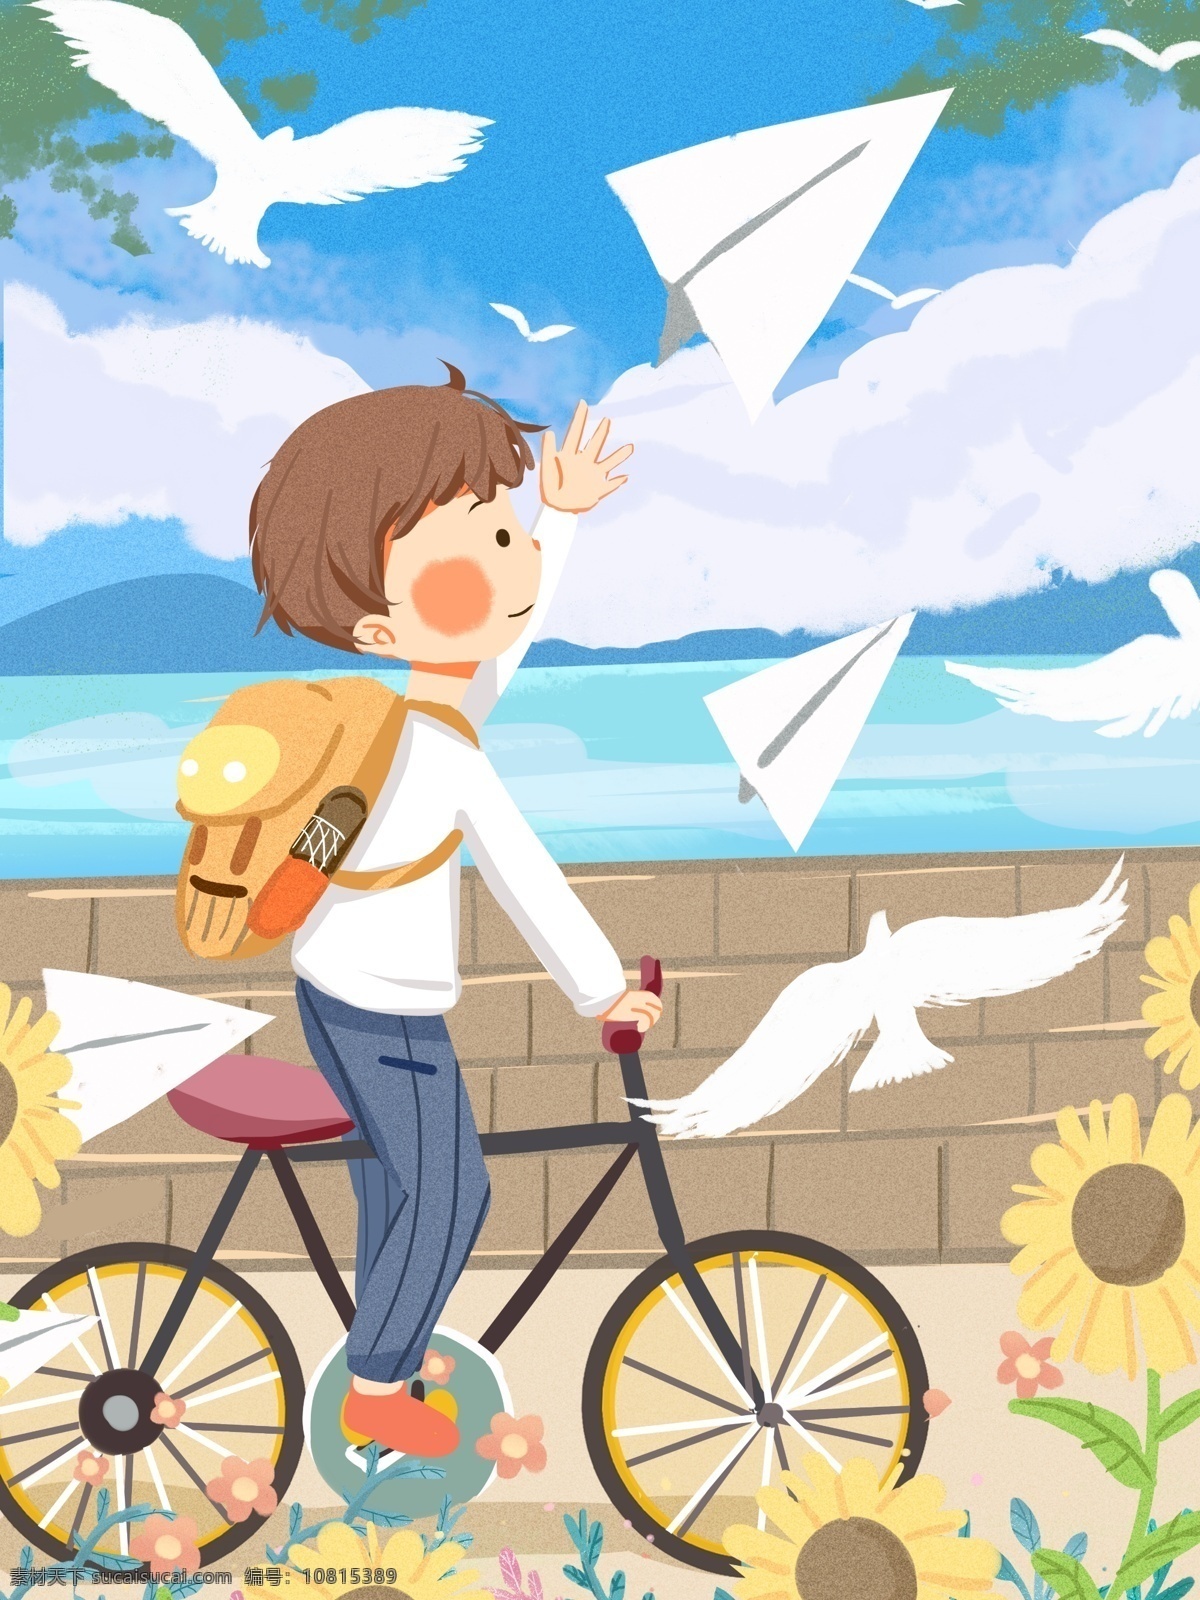 追 梦 少年 旅行 梦想 家 励志 插画 自行车 温暖 纸飞机 追梦 单车